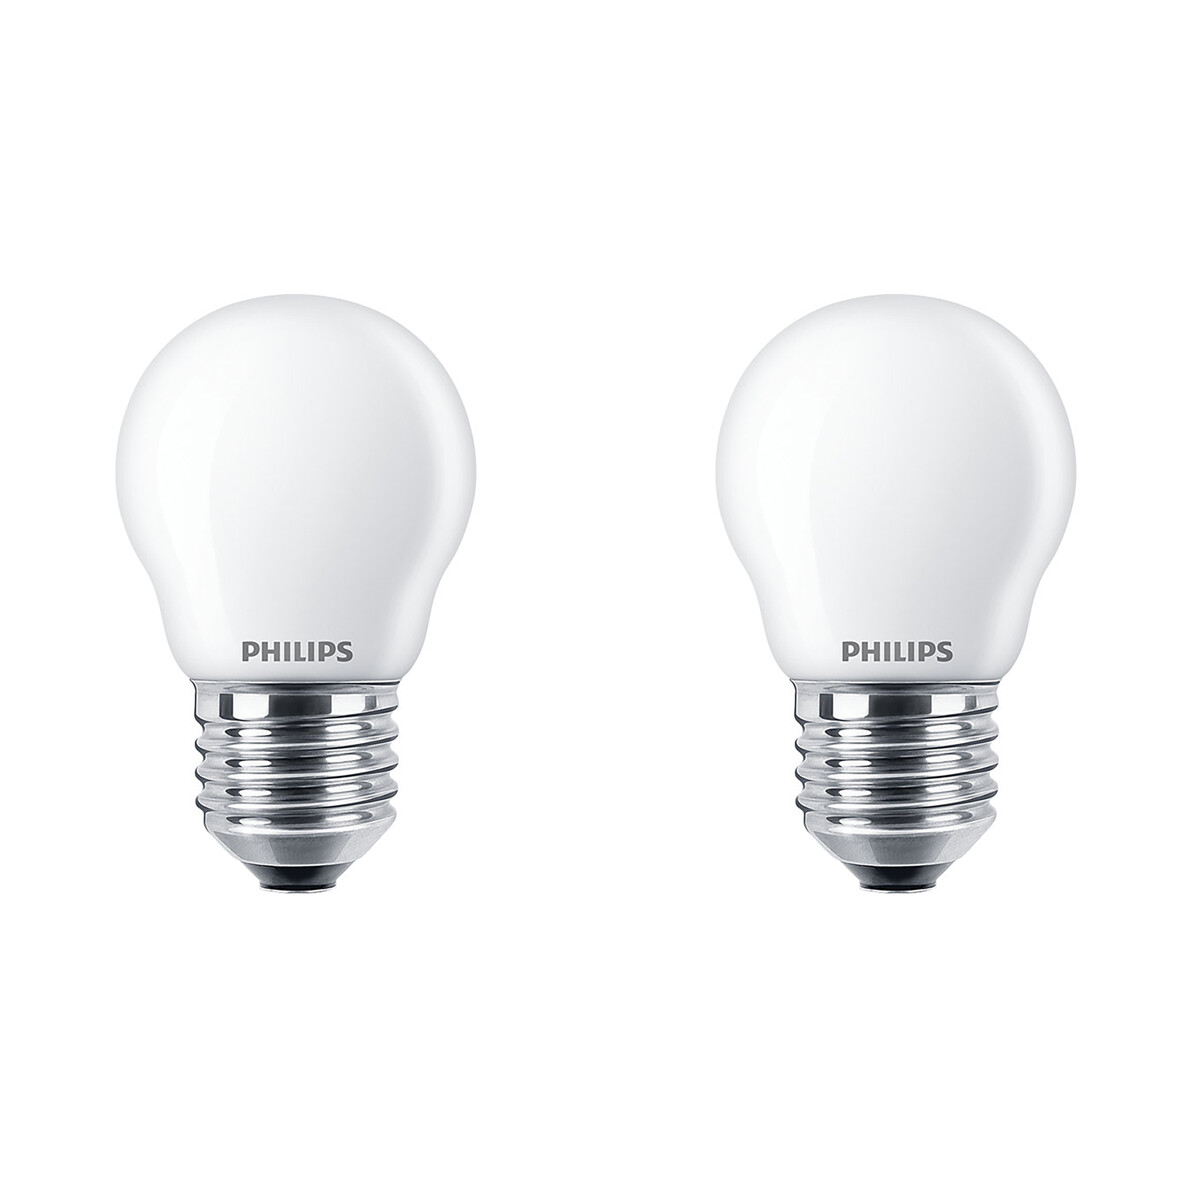 PHILIPS - LED Lamp - Set 2 Stuks - Classic Lustre 827 P45 FR - E27 Fitting - 2.2W - Warm Wit 2700K |